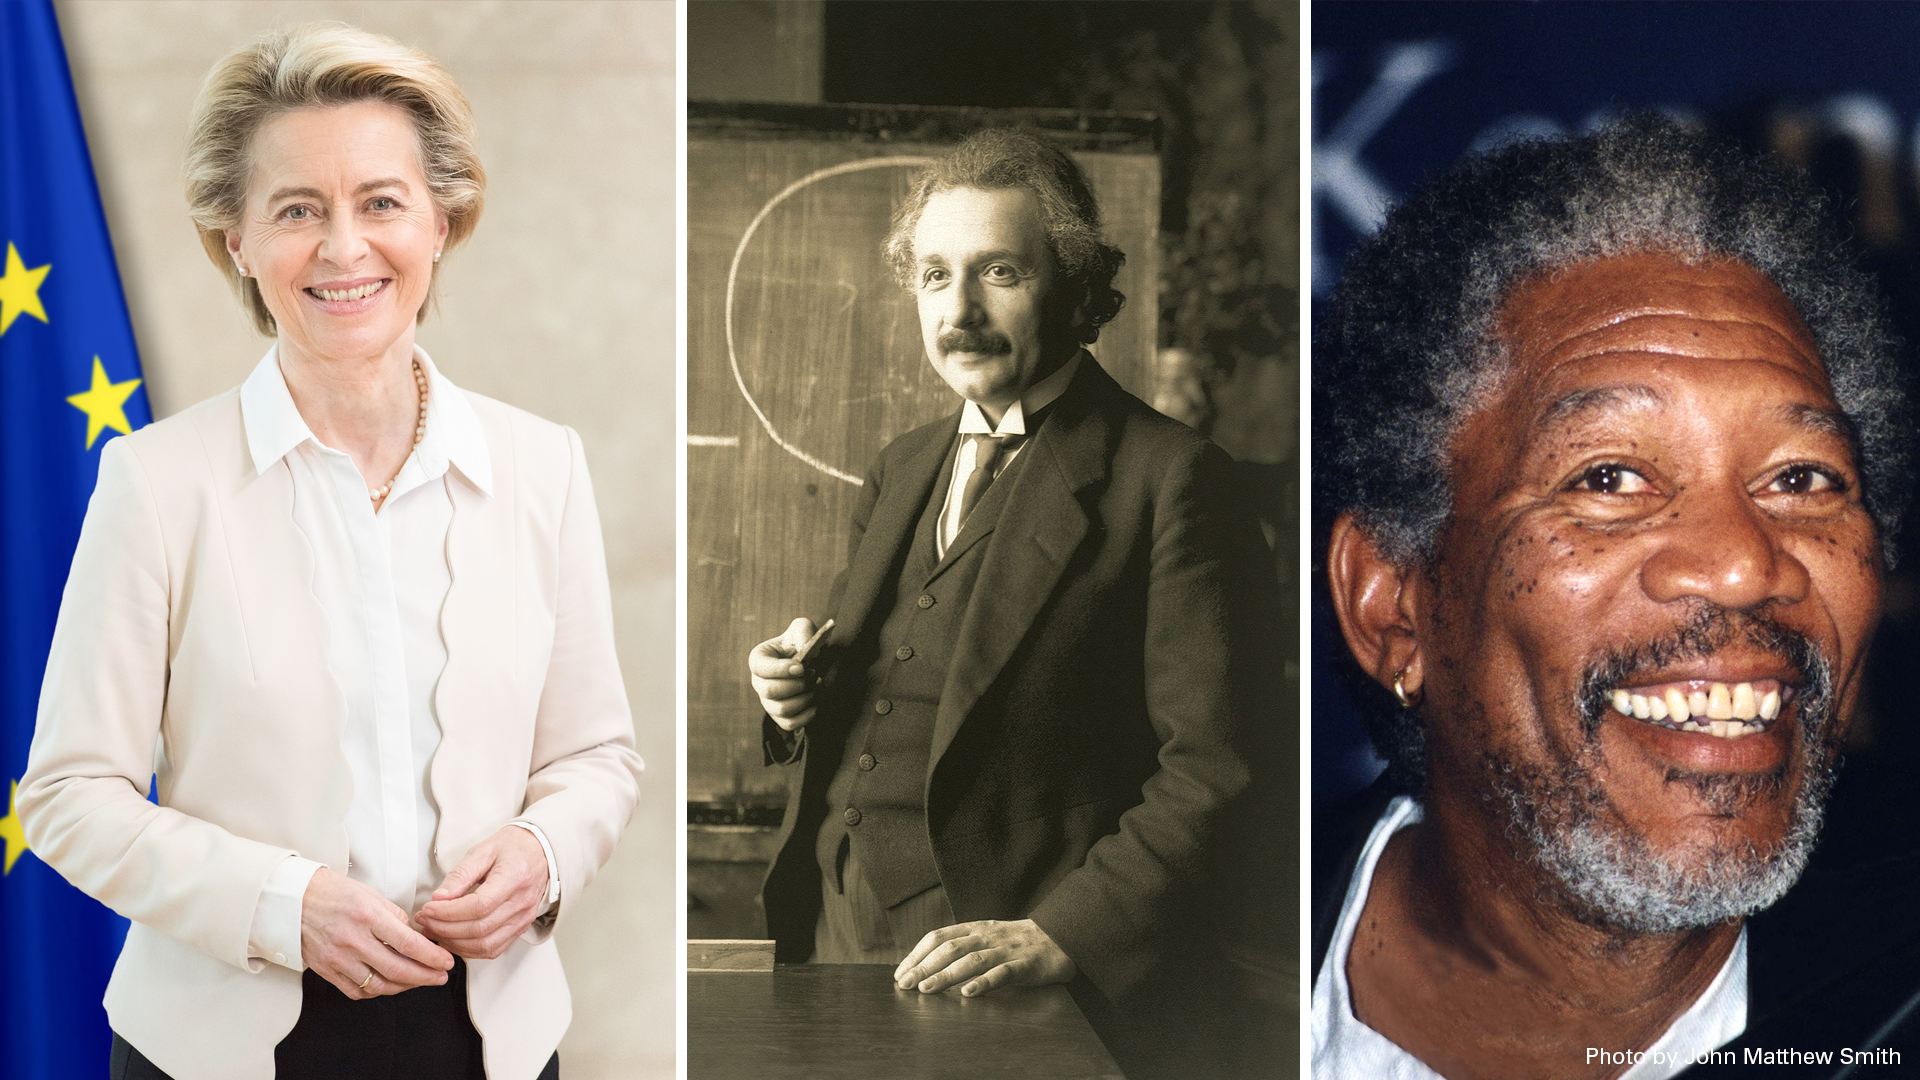 Image of Ursula von der Leyen, Albert Einstein, and Morgan Freeman